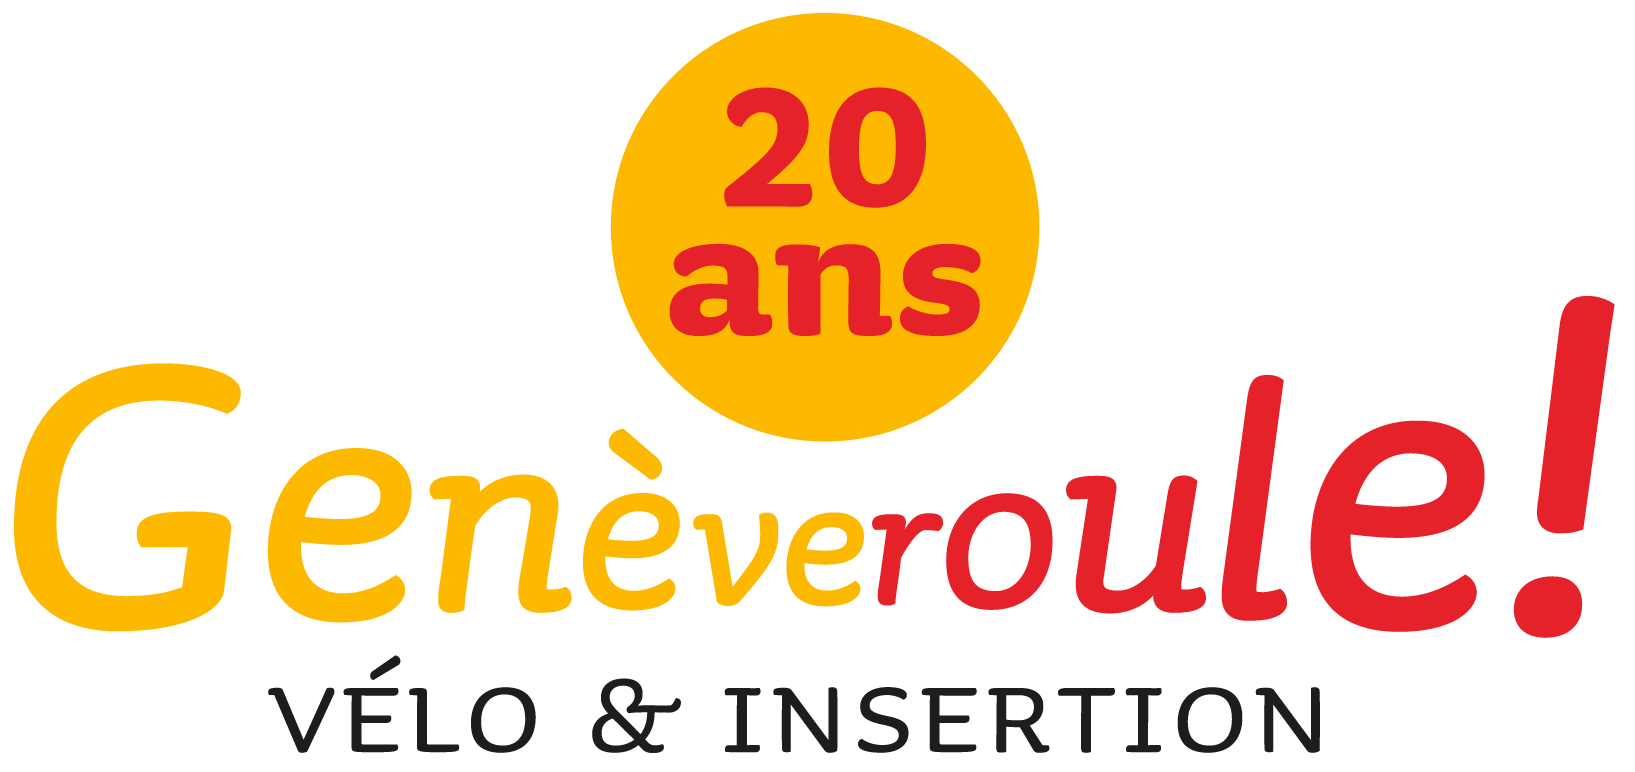 Geneveroule_Logo-20-ans